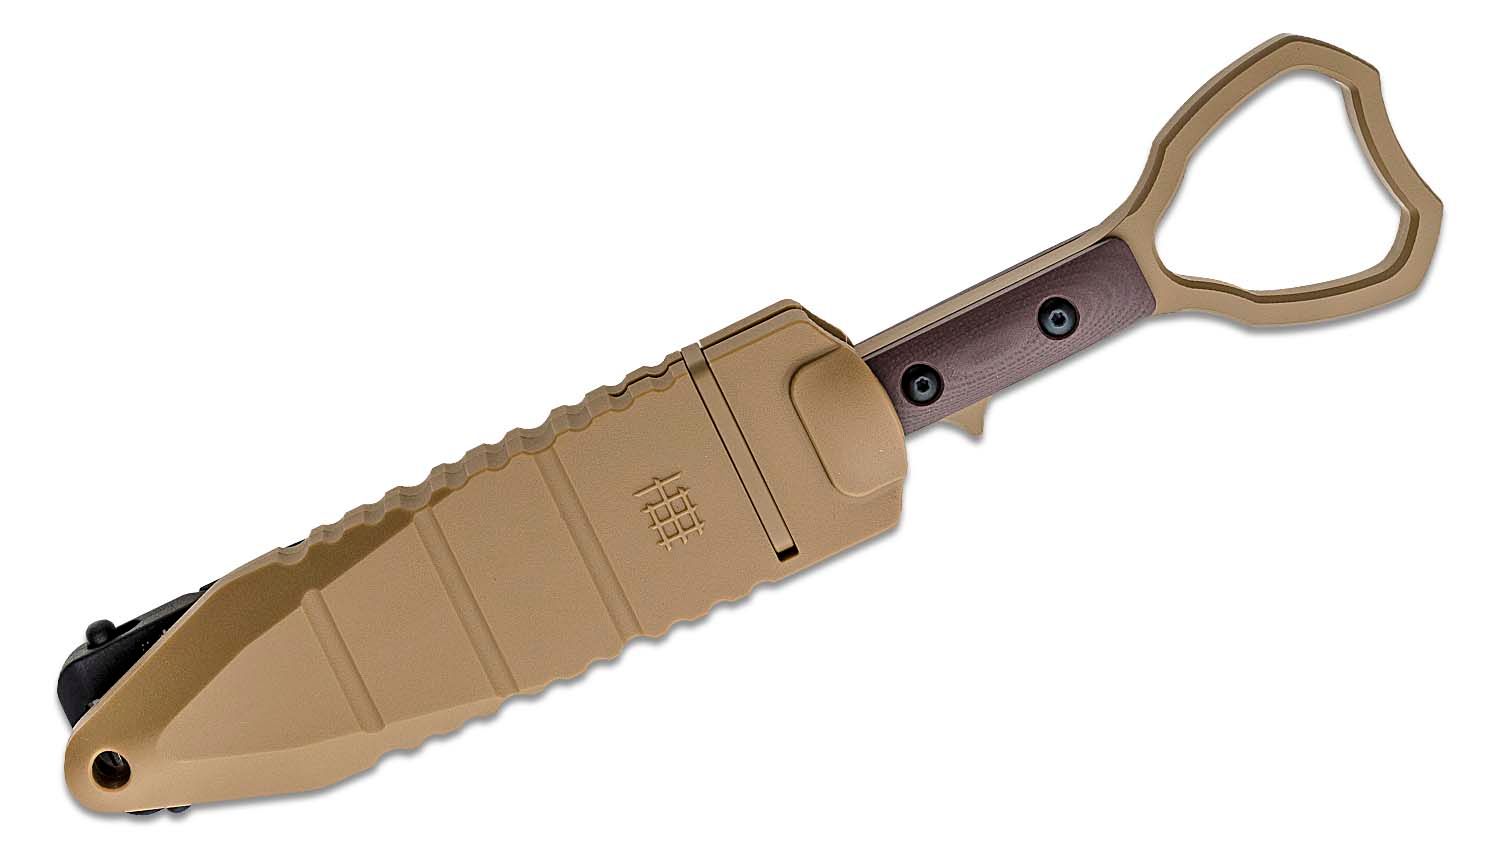  2,95” Serrated Blade Pink Knife - Pocket Knife for